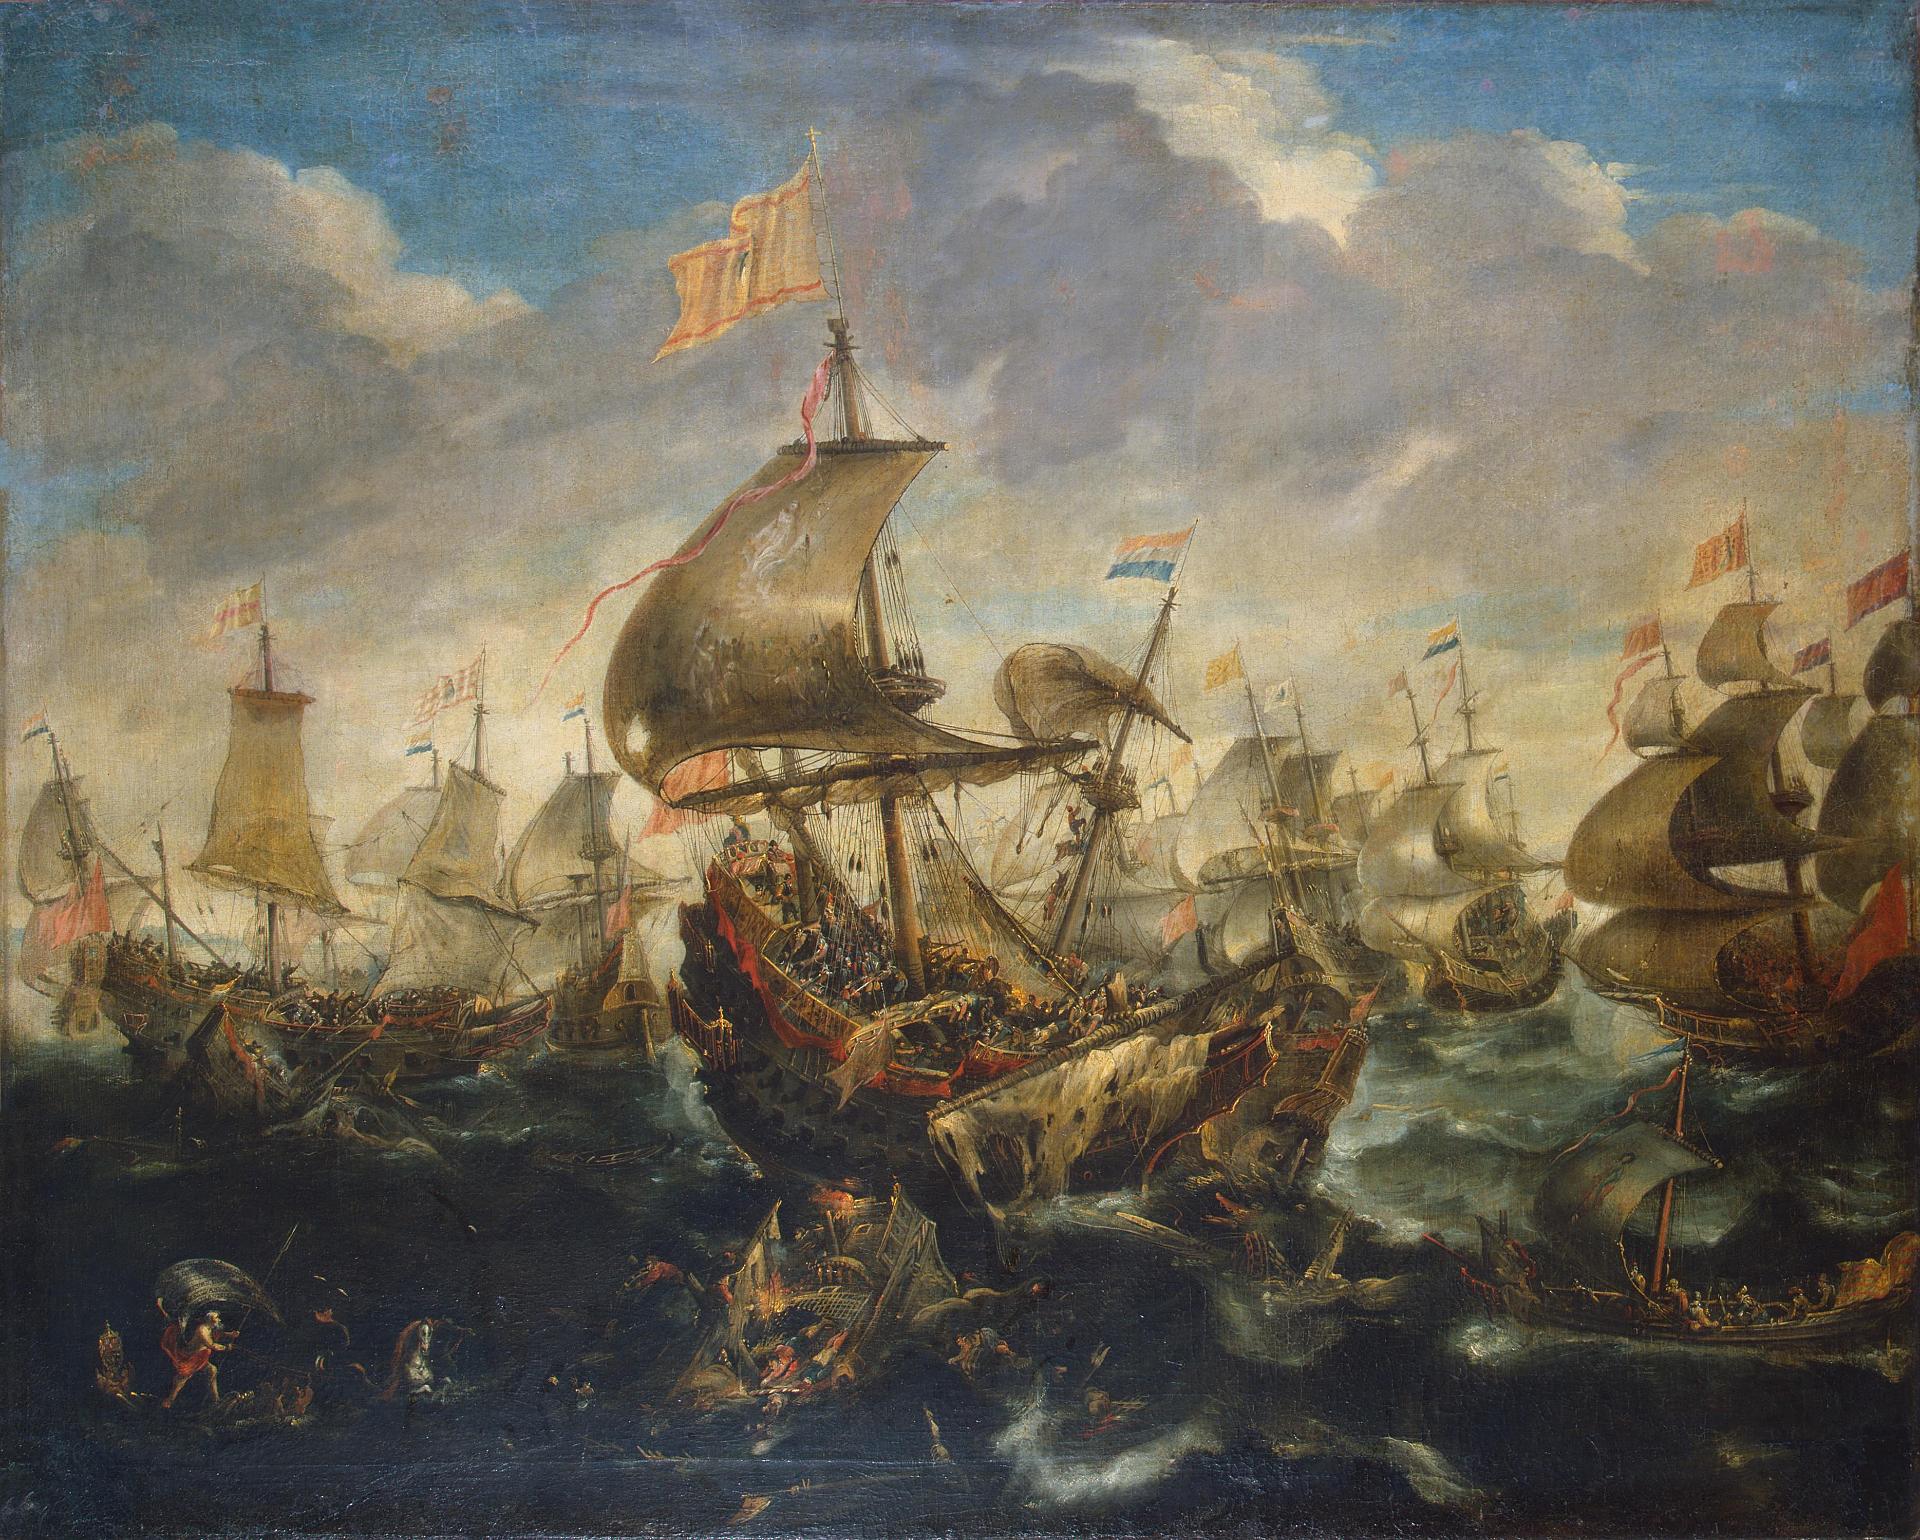 Андрис ван Эртфельт. "Сражение испанского флота с кораблями восставшей Голландии в мае 1573 года во время  осады Хралема". Середина 1620-х. Эрмитаж, Санкт-Петербург.